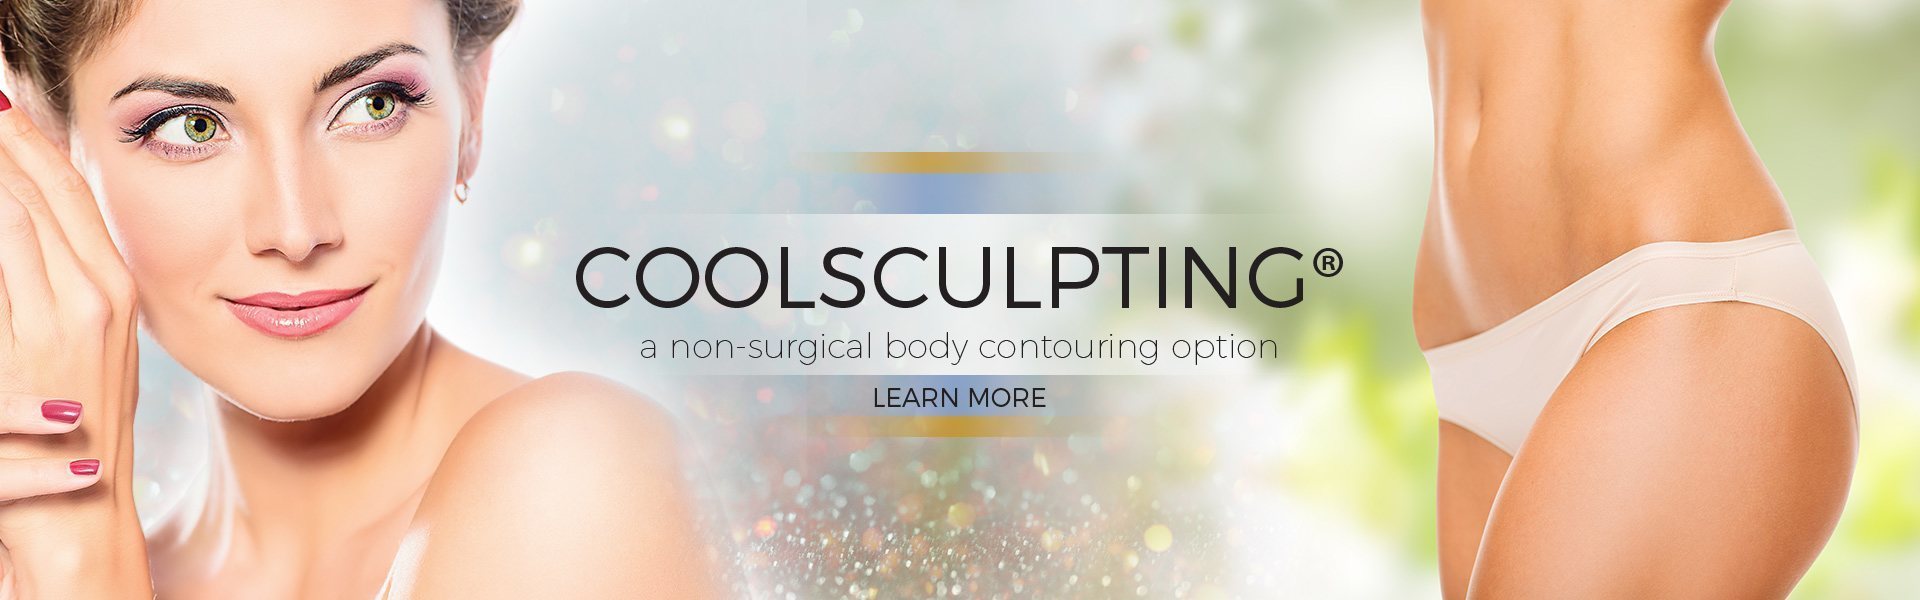 coolsculpting-slide1